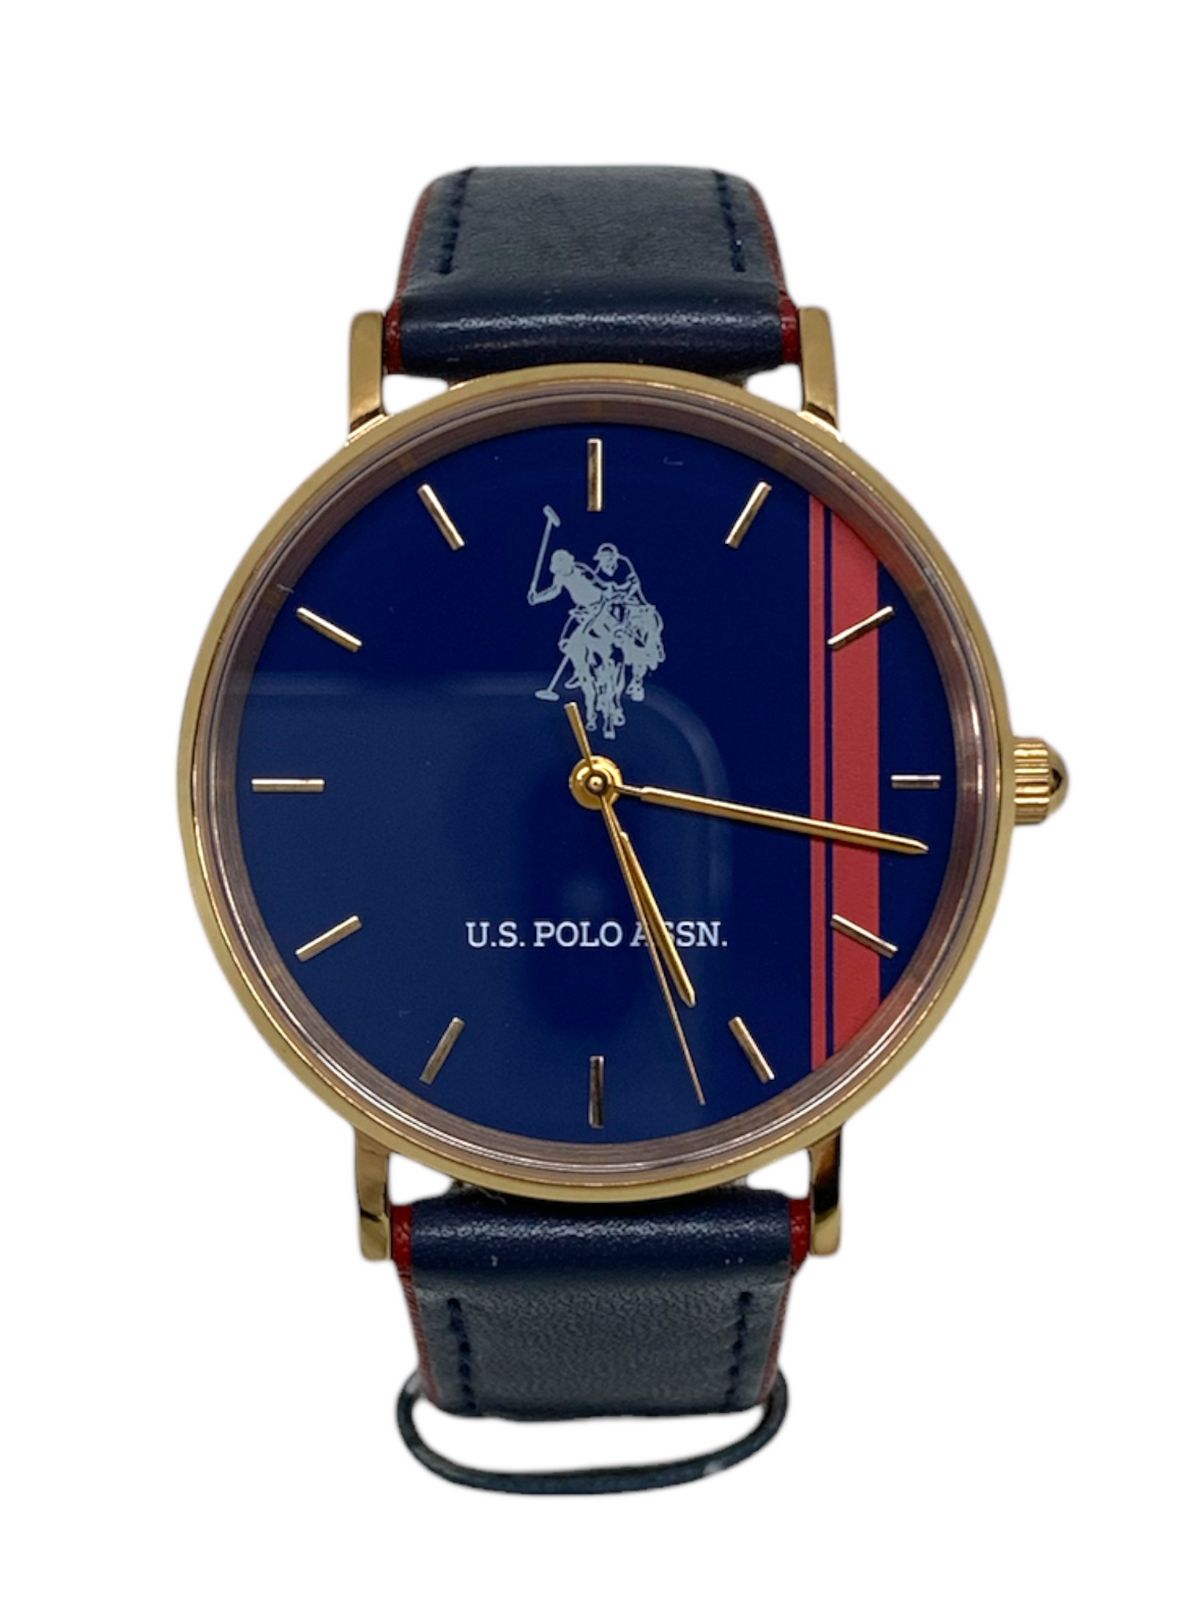 U.S.POLO (ユーエスポロ) トリコロールカラーデザイン レザー 文字盤 クォーツ腕時計 US-1B ブルー×ネイビー メンズ/091